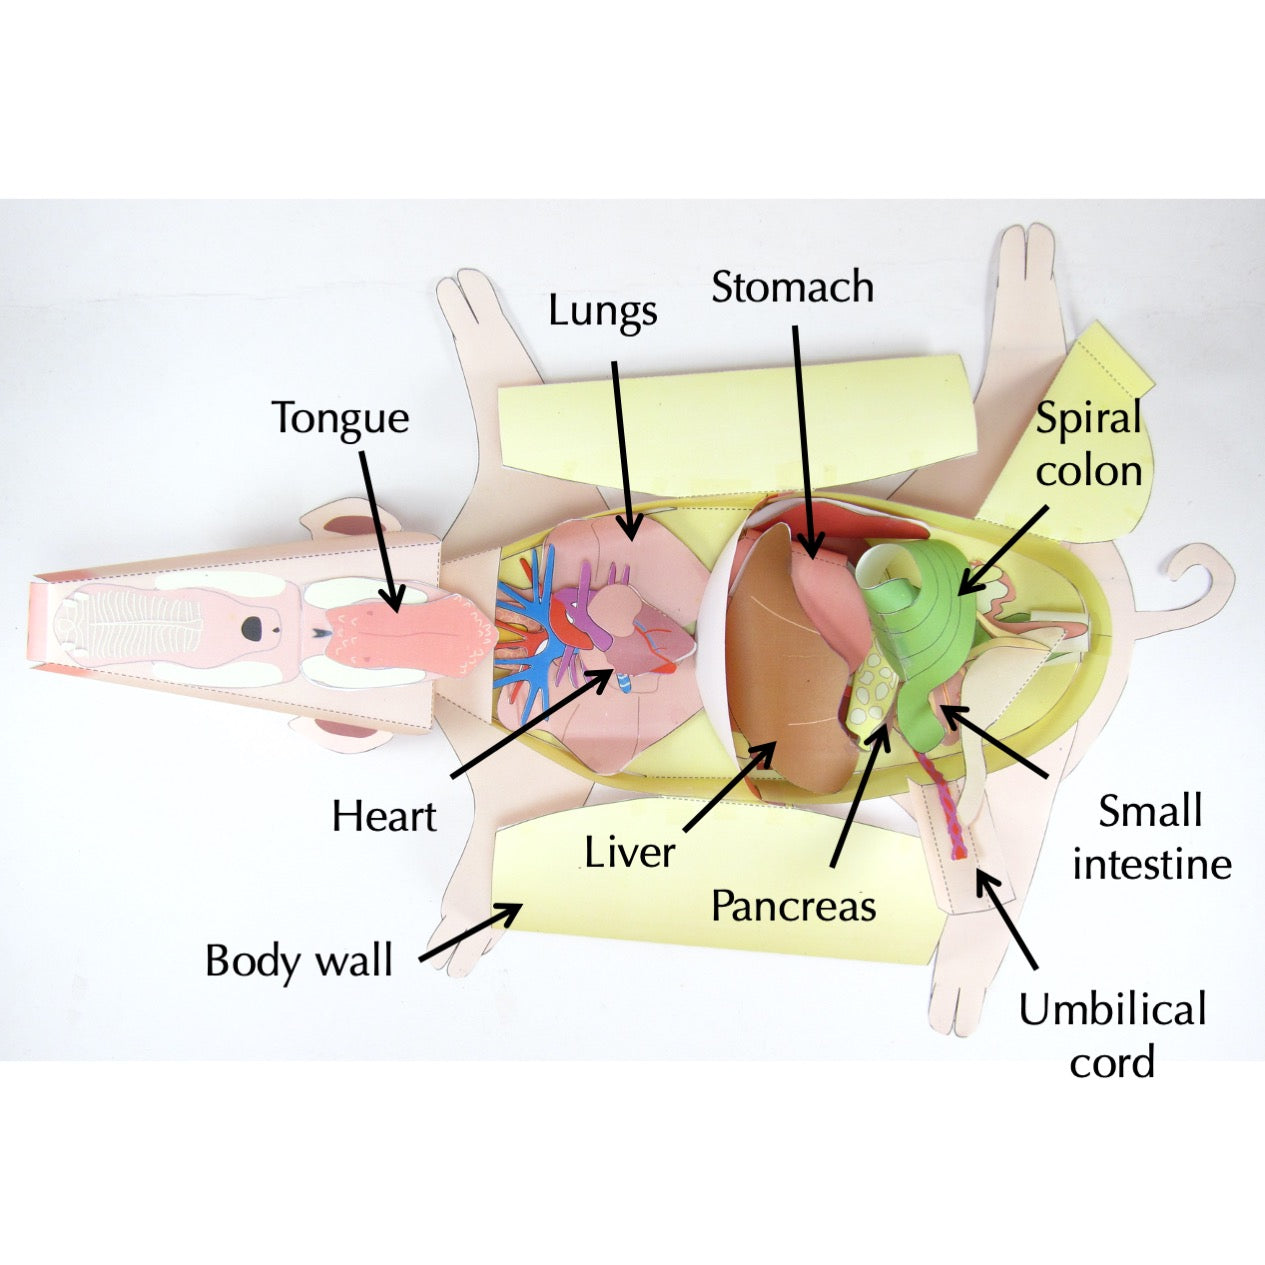 fetal pig respiratory system